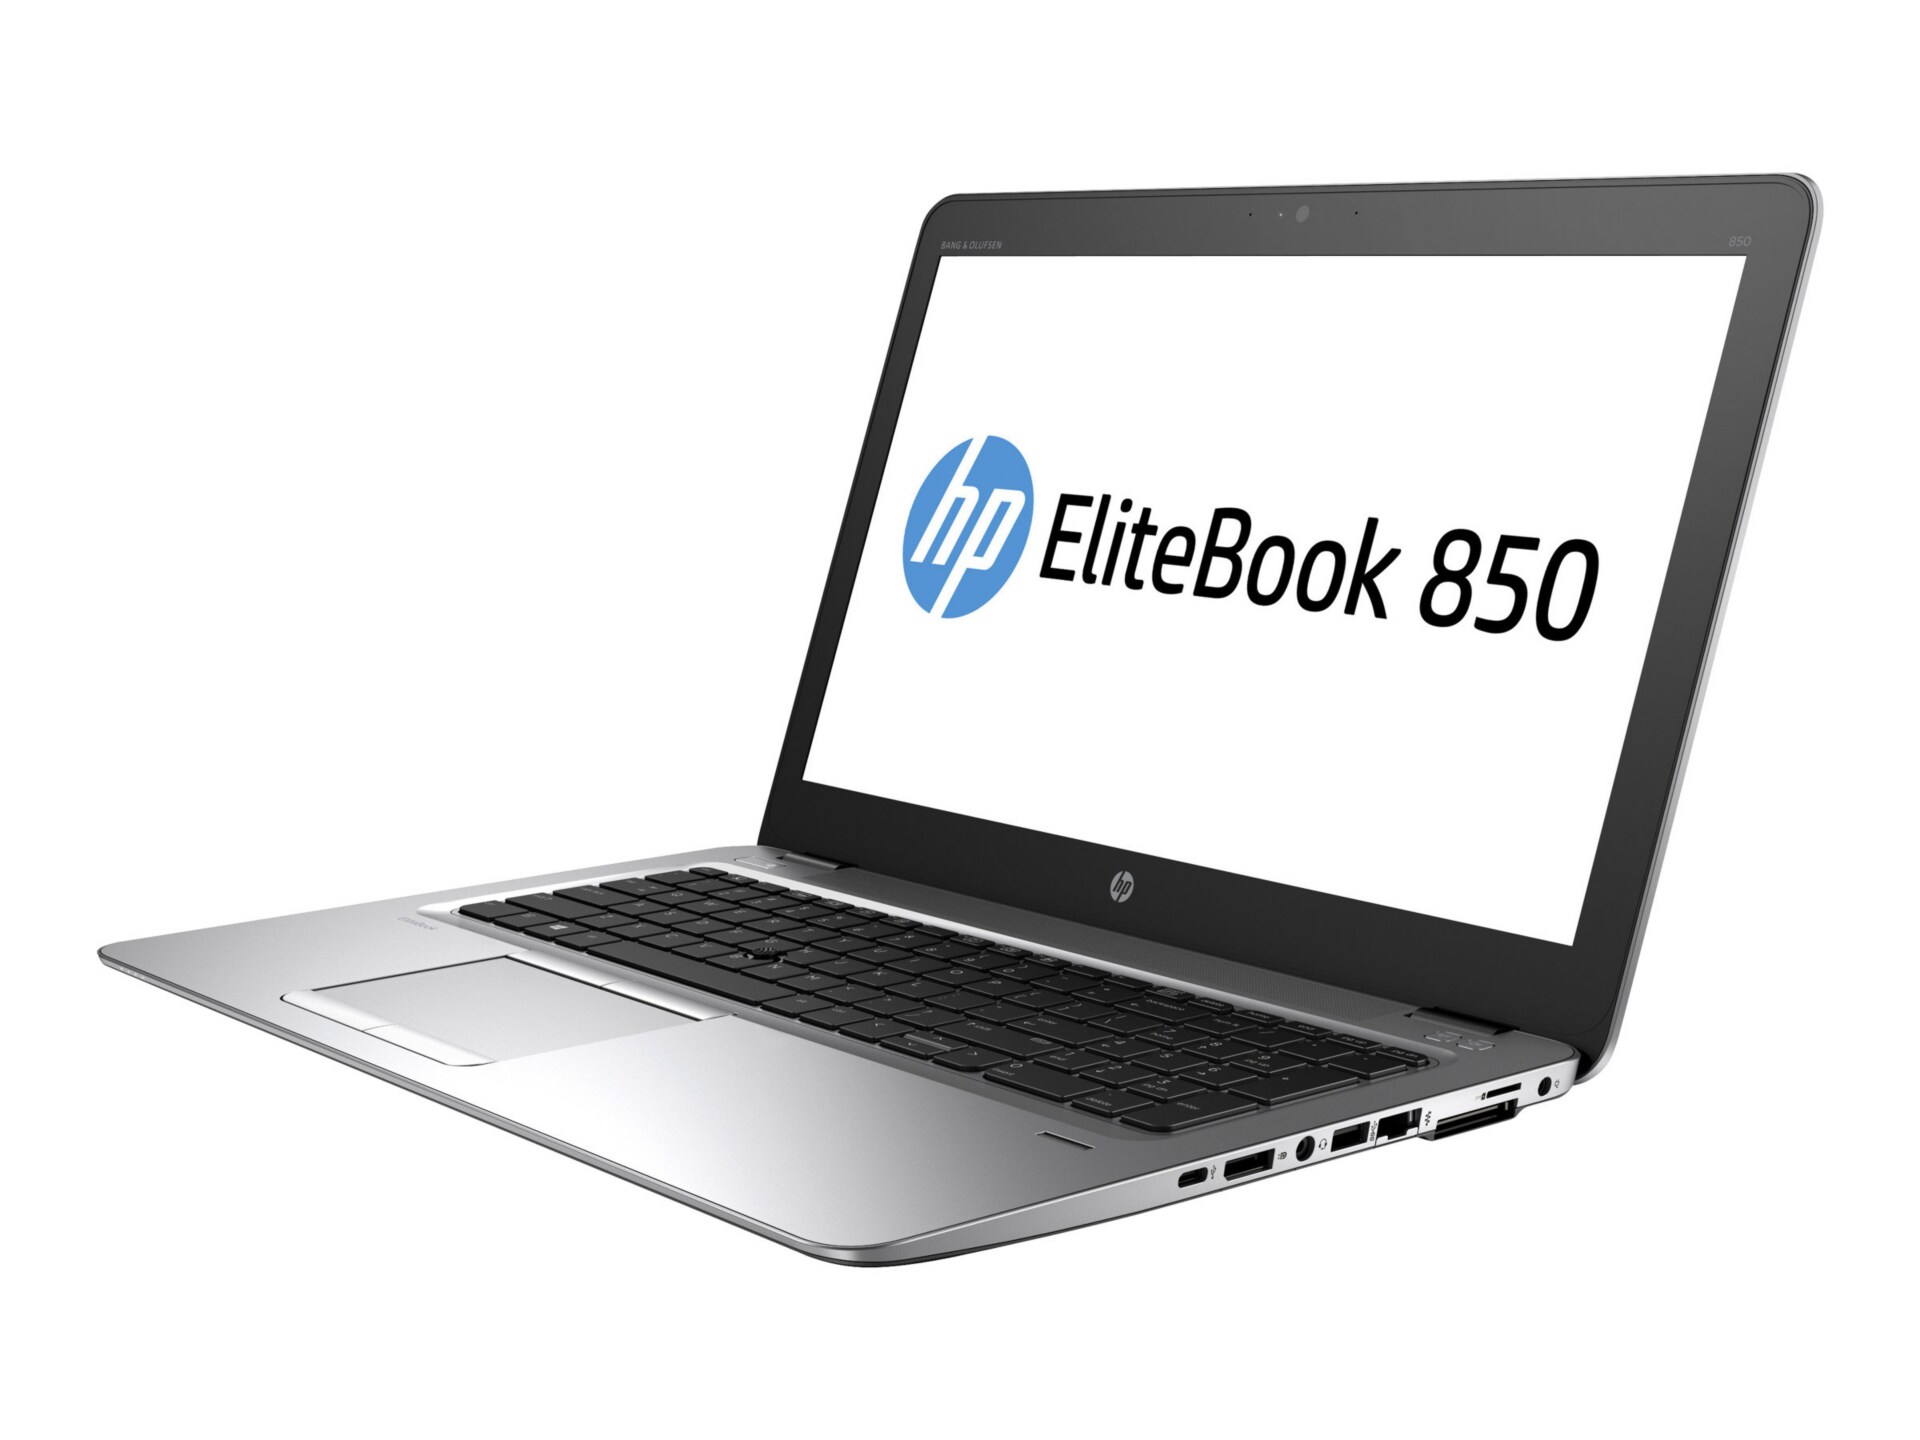 HP EliteBook 850 G3 - 15.6" - Core i7 6600U - 16 GB RAM - 256 GB SSD - US